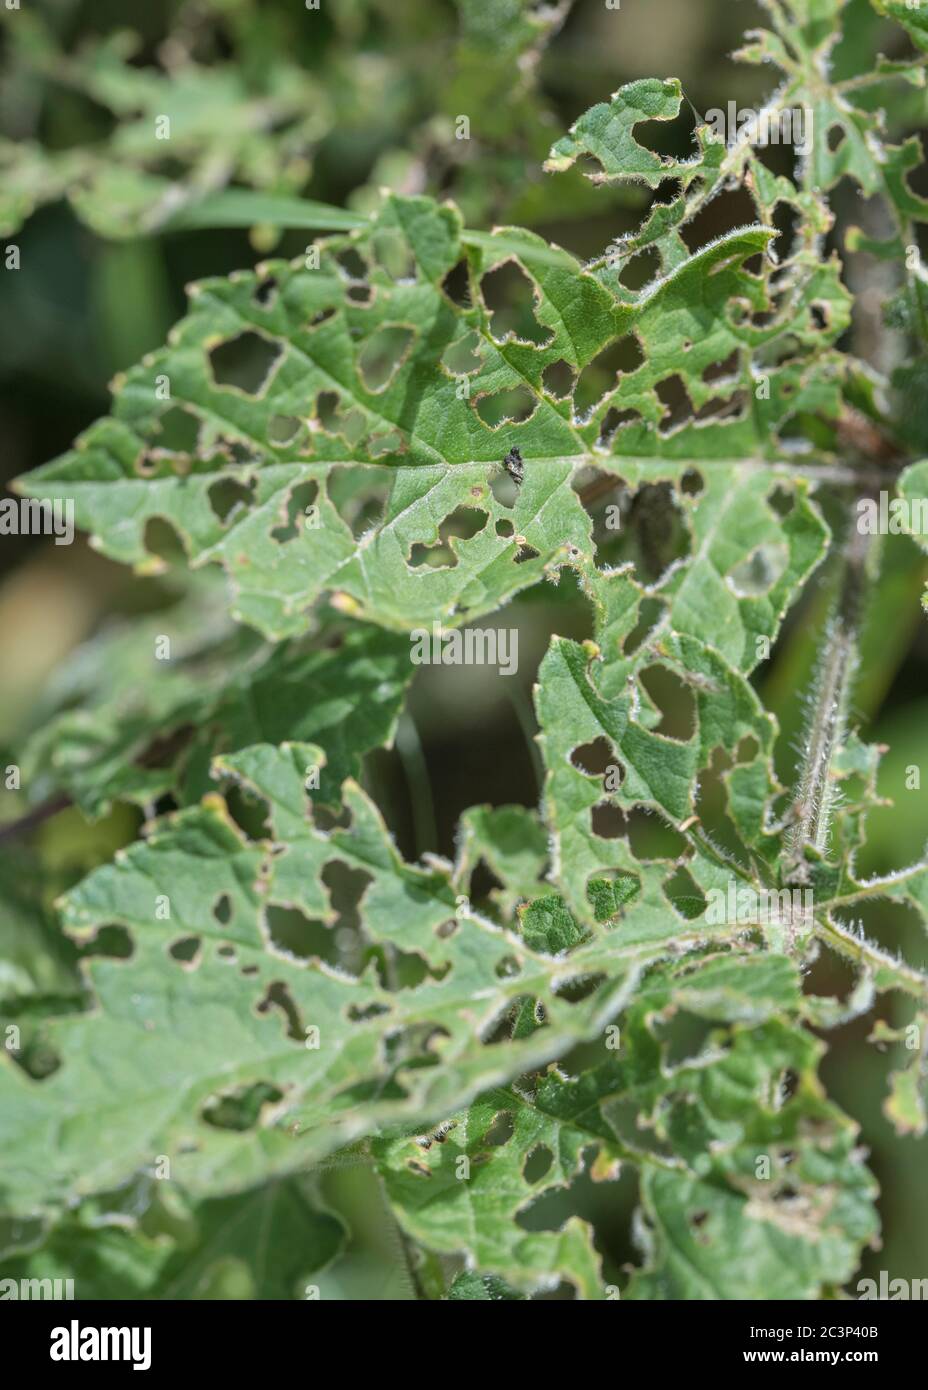 Blätter von Hogweed / Heracleum sphondylium von Insekten (Arten unbekannt), im Sommer Sonnenlicht weggefressen. Für insektengeschädigte Pflanzen, Insektenschäden. Stockfoto